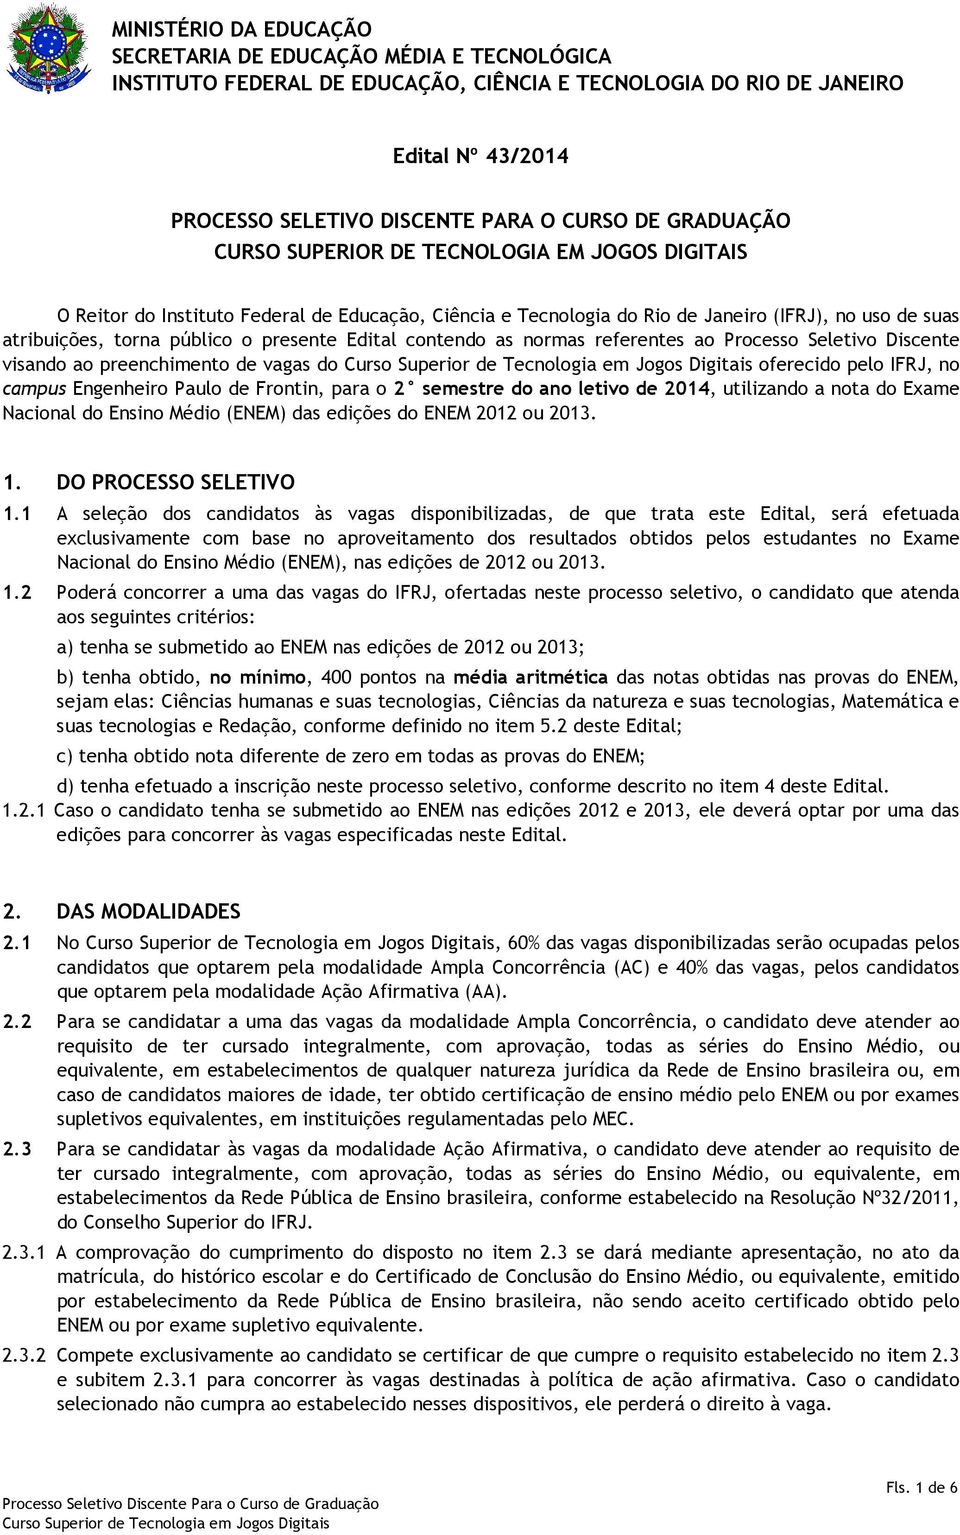 Edital contendo as normas referentes ao Processo Seletivo Discente visando ao preenchimento de vagas do oferecido pelo IFRJ, no campus Engenheiro Paulo de Frontin, para o 2 semestre do ano letivo de